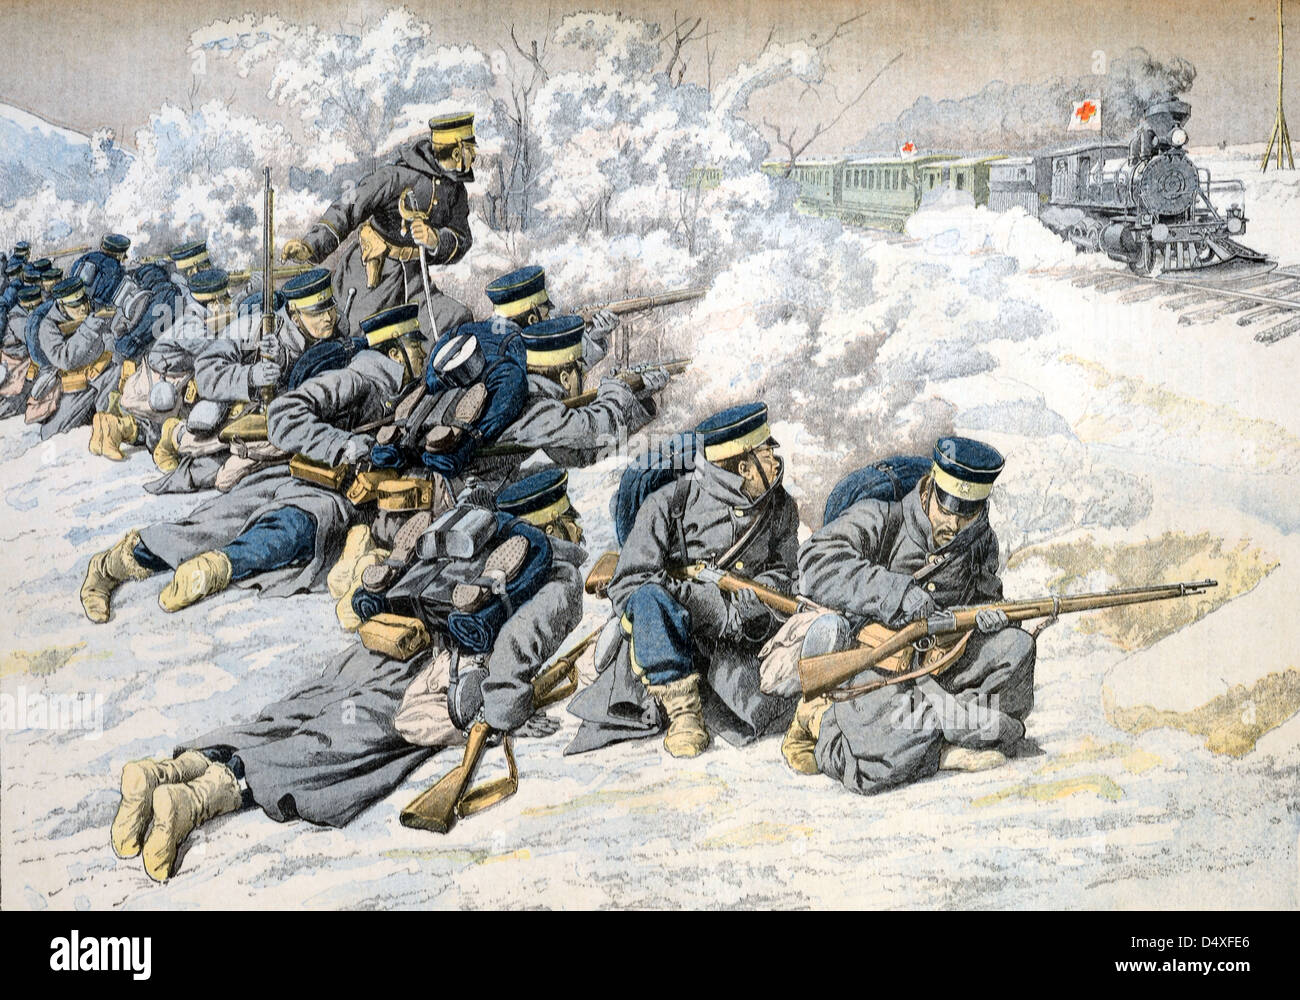 Vintage ou ancienne illustration des troupes japonaises attaquant un train hospitalier en quittant Port Arthur Manchuria pendant la guerre russo-japonaise (mai 1904) Banque D'Images